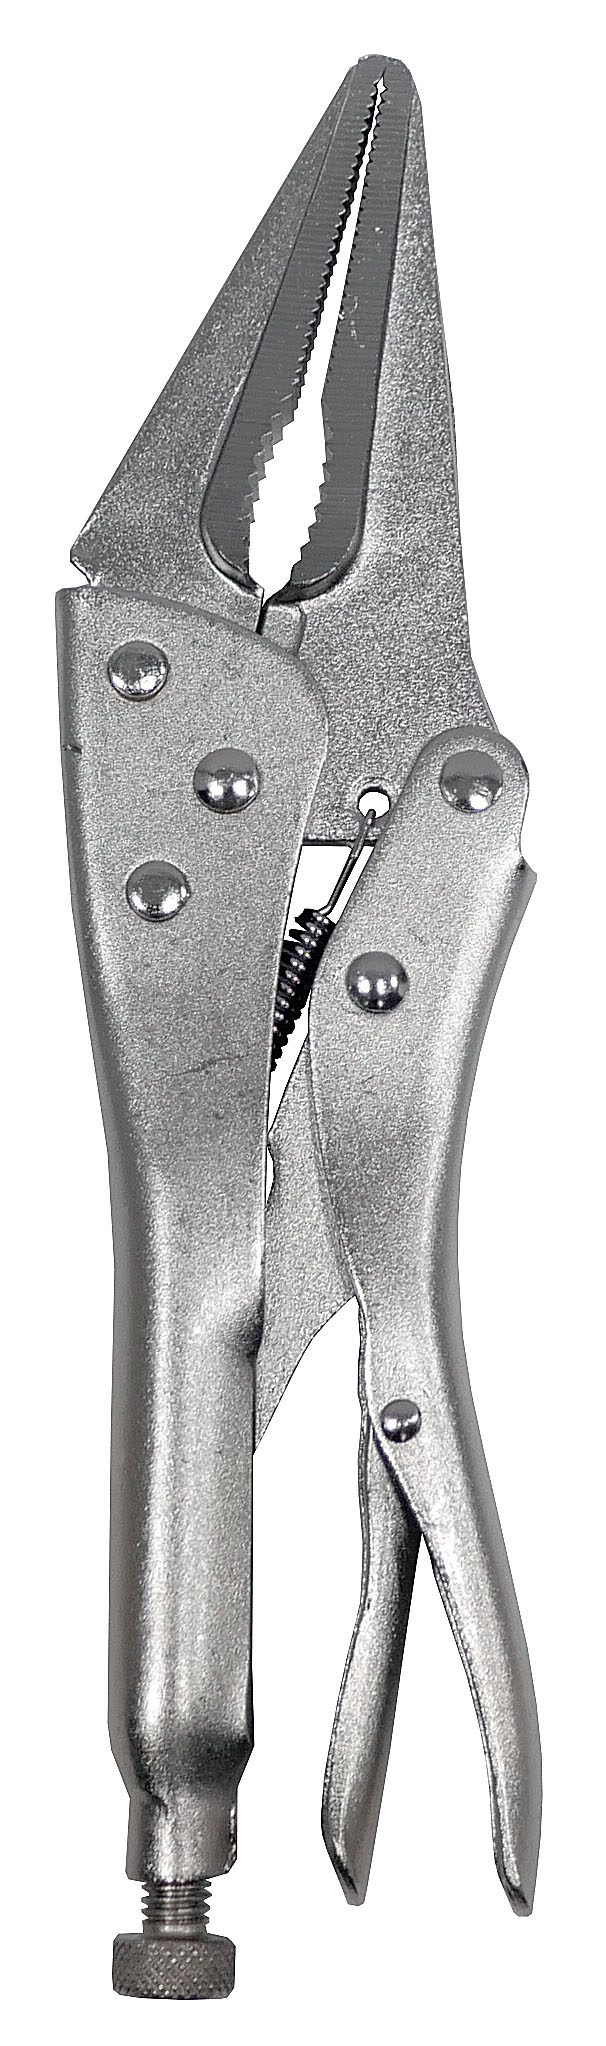 Клещи Энкор зажимные 230 мм с удлиненными губками - 2 шт. рукавица щетка для шерсти на правую руку с удлиненными зубчиками синяя